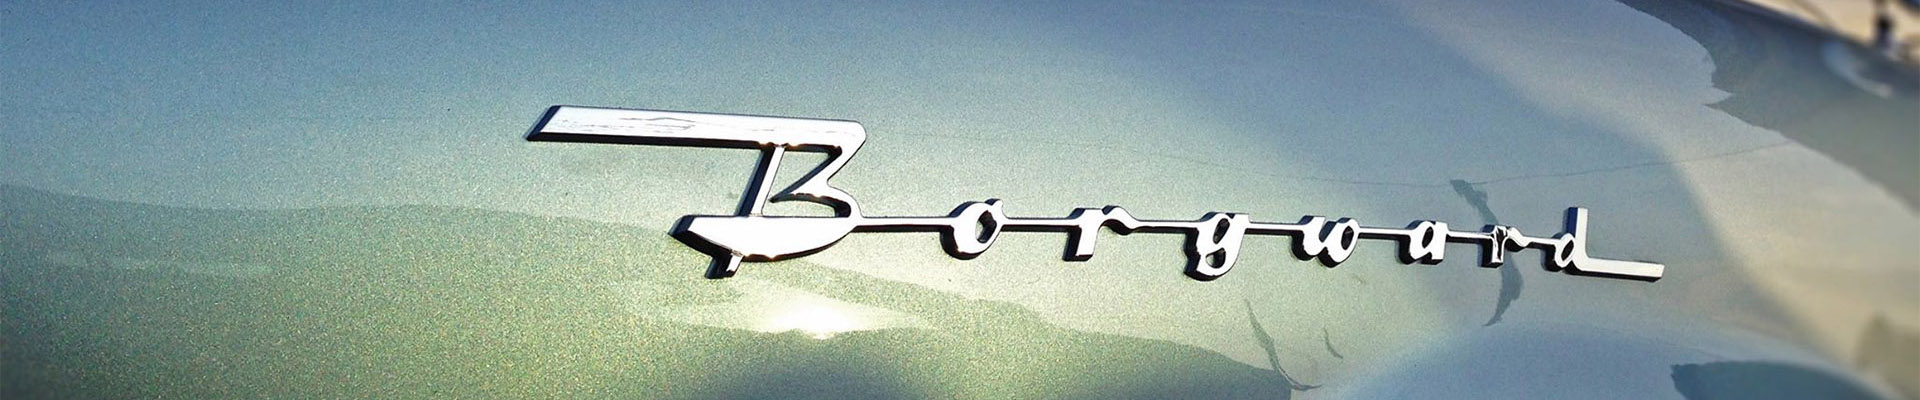 Borgward bei Klassische Automobile Schwarz